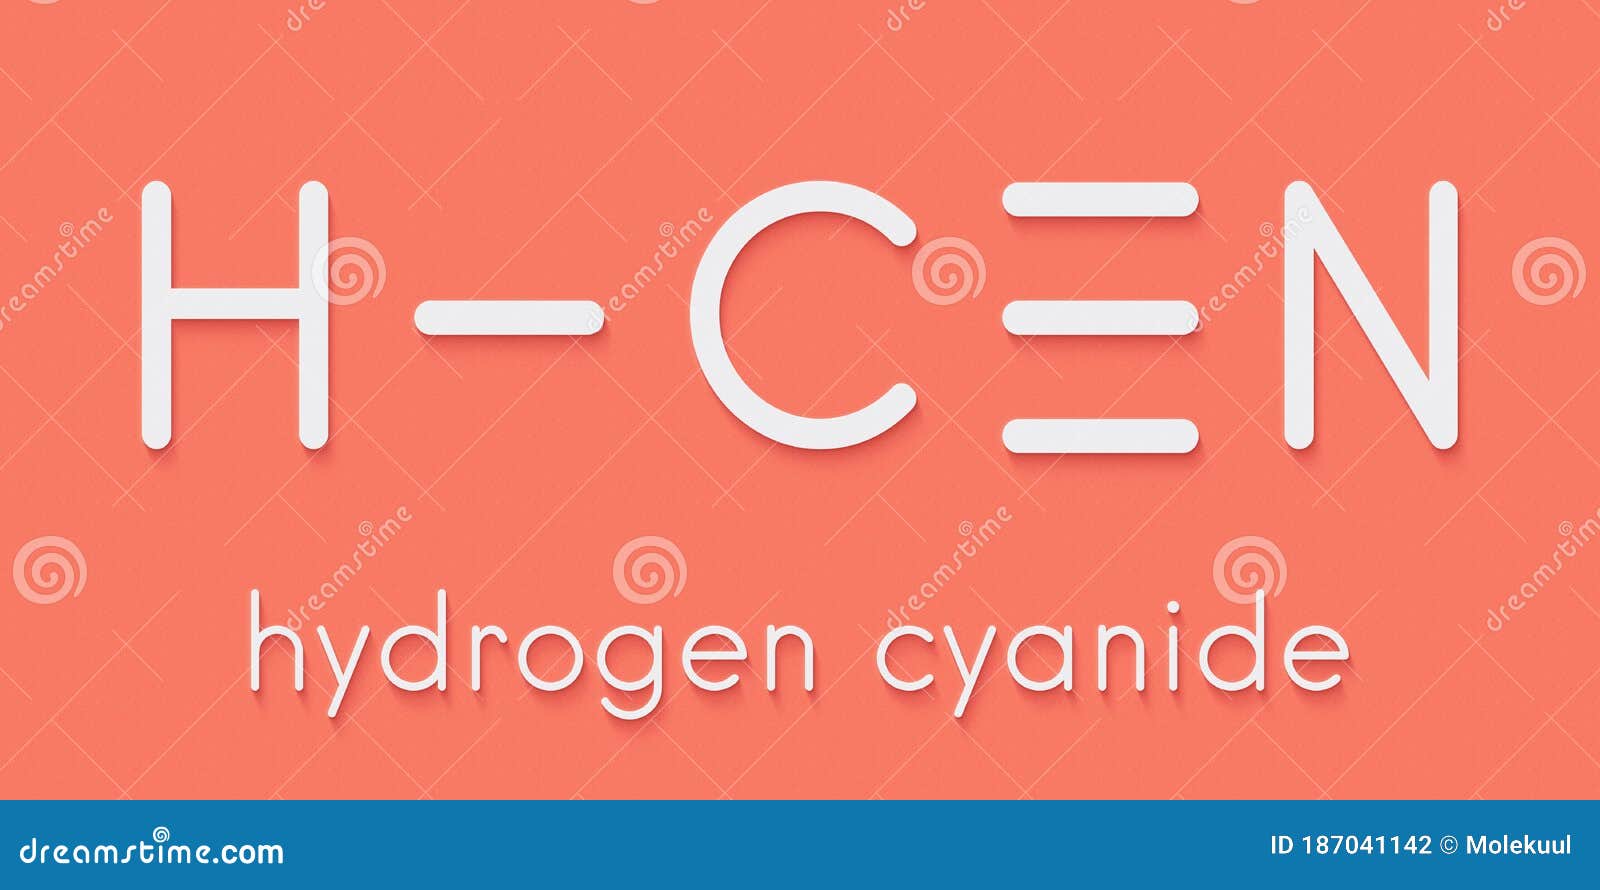 Hydrogen Cyanide HCN Poison Molecule. Has Typical Almond-like Odor ...